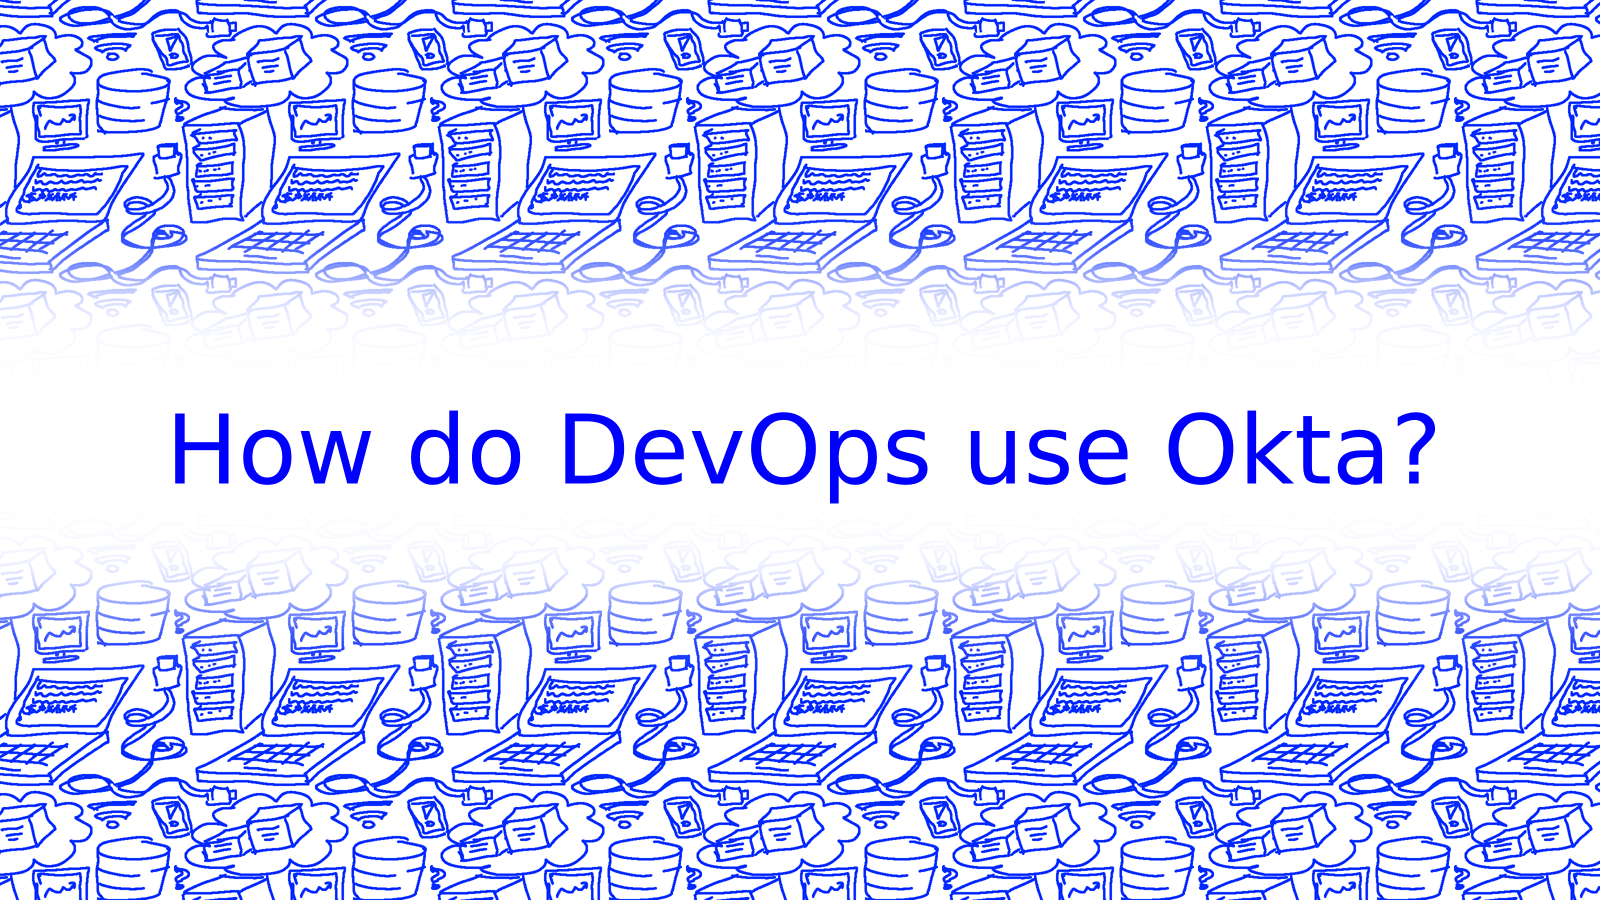 How Can DevOps Engineers Use Okta?